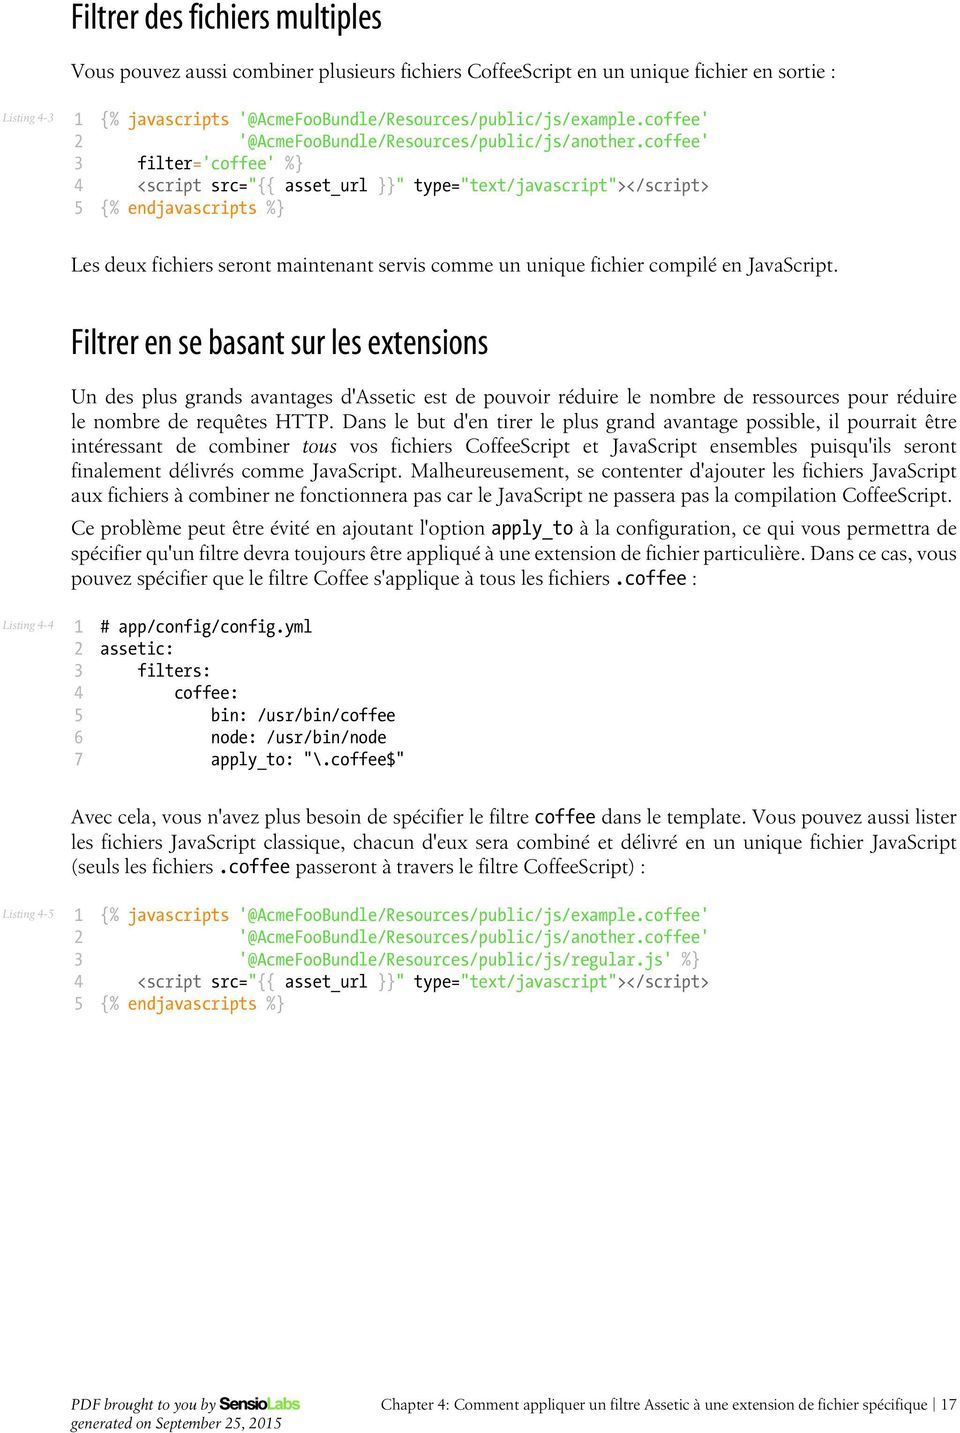 coffee' filter='coffee' % <script src=" asset_url " type="text/javascript"></script> % endjavascripts % Les deux fichiers seront maintenant servis comme un unique fichier compilé en JavaScript.